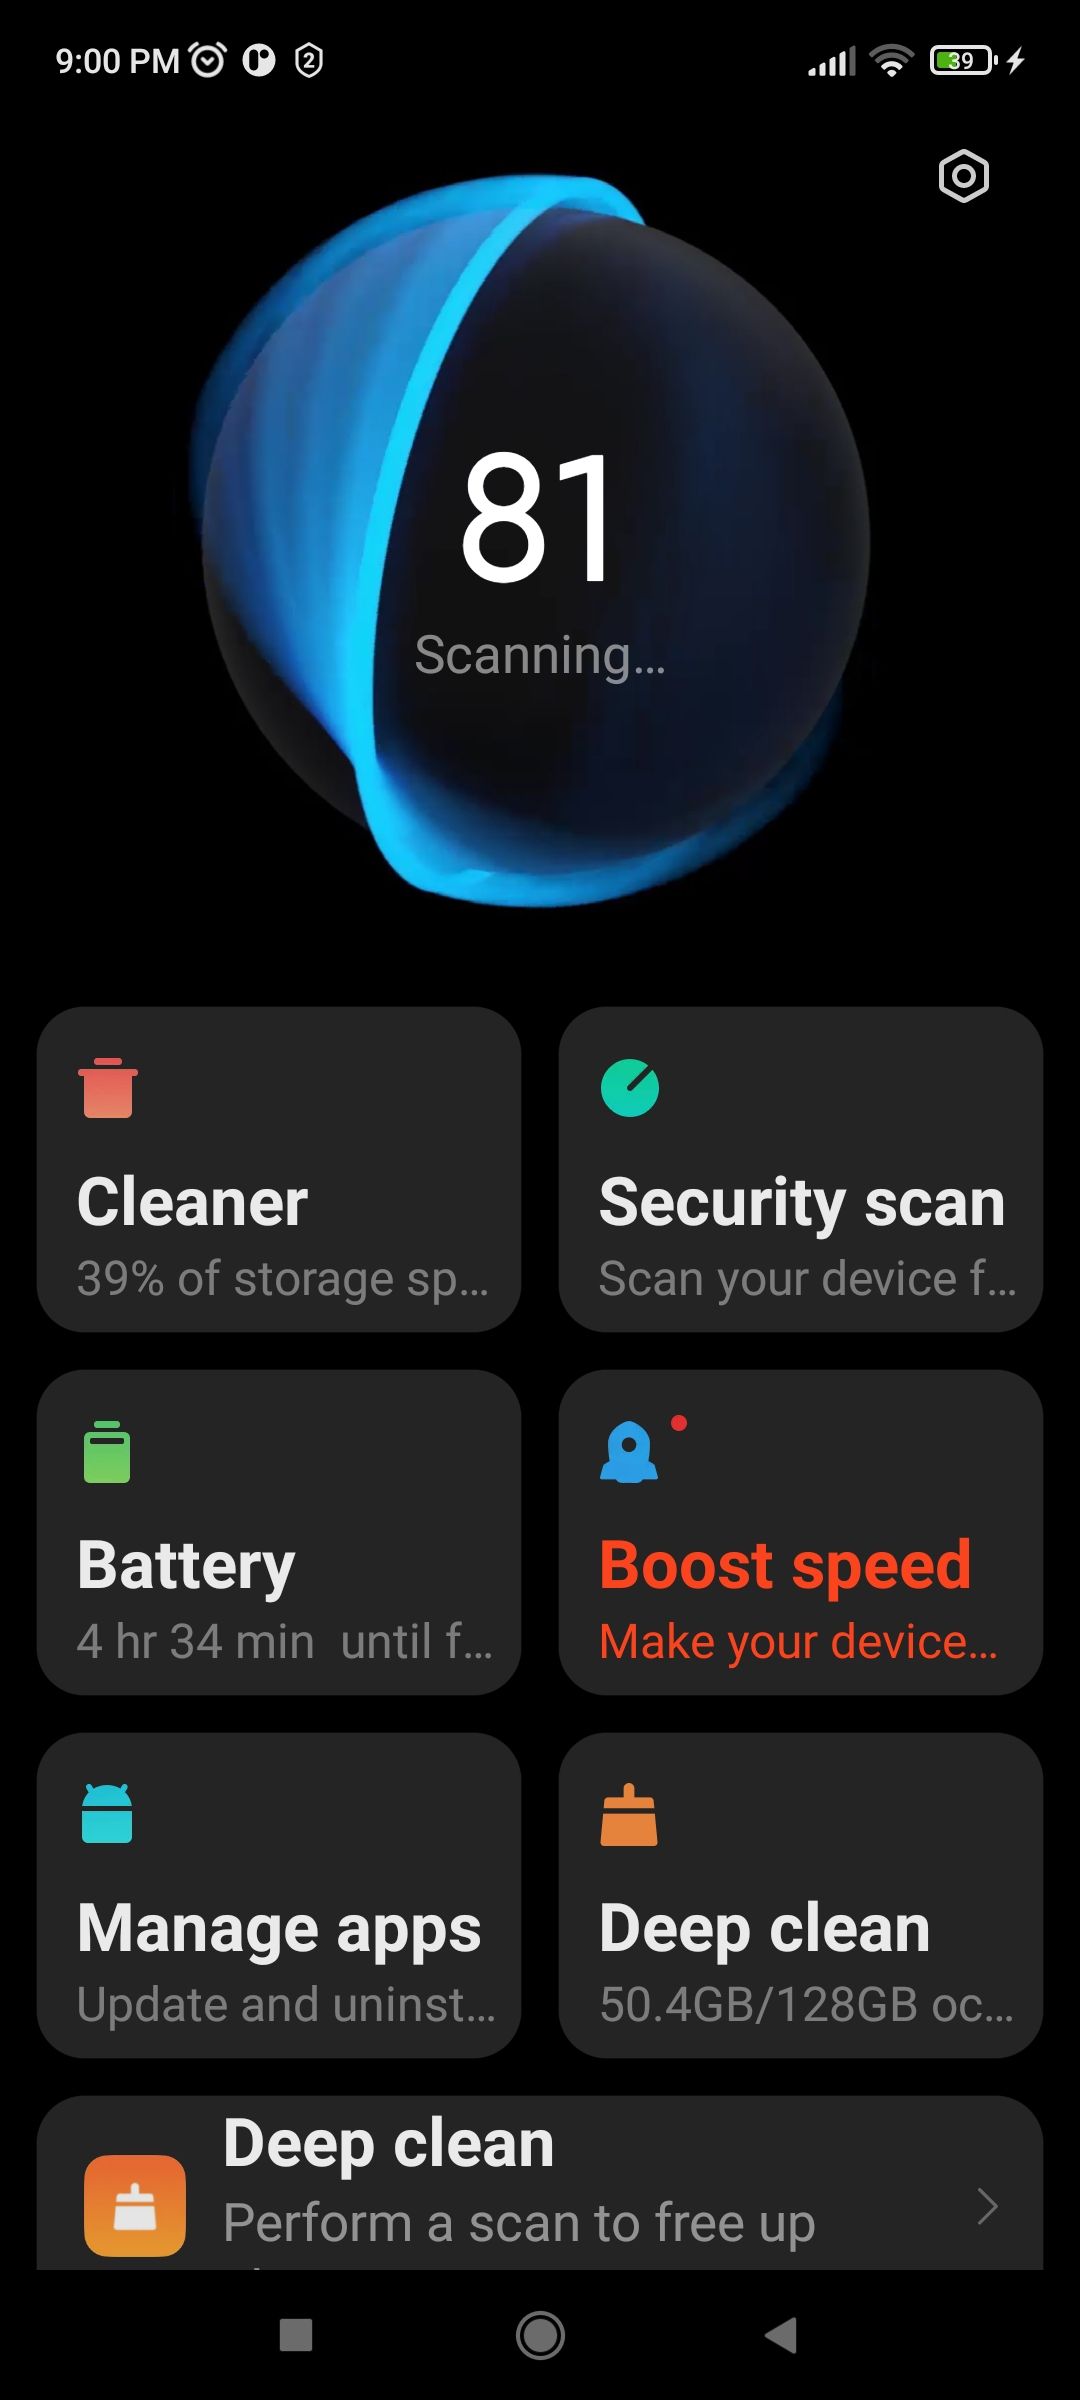 Security App in Xiaomi Phones